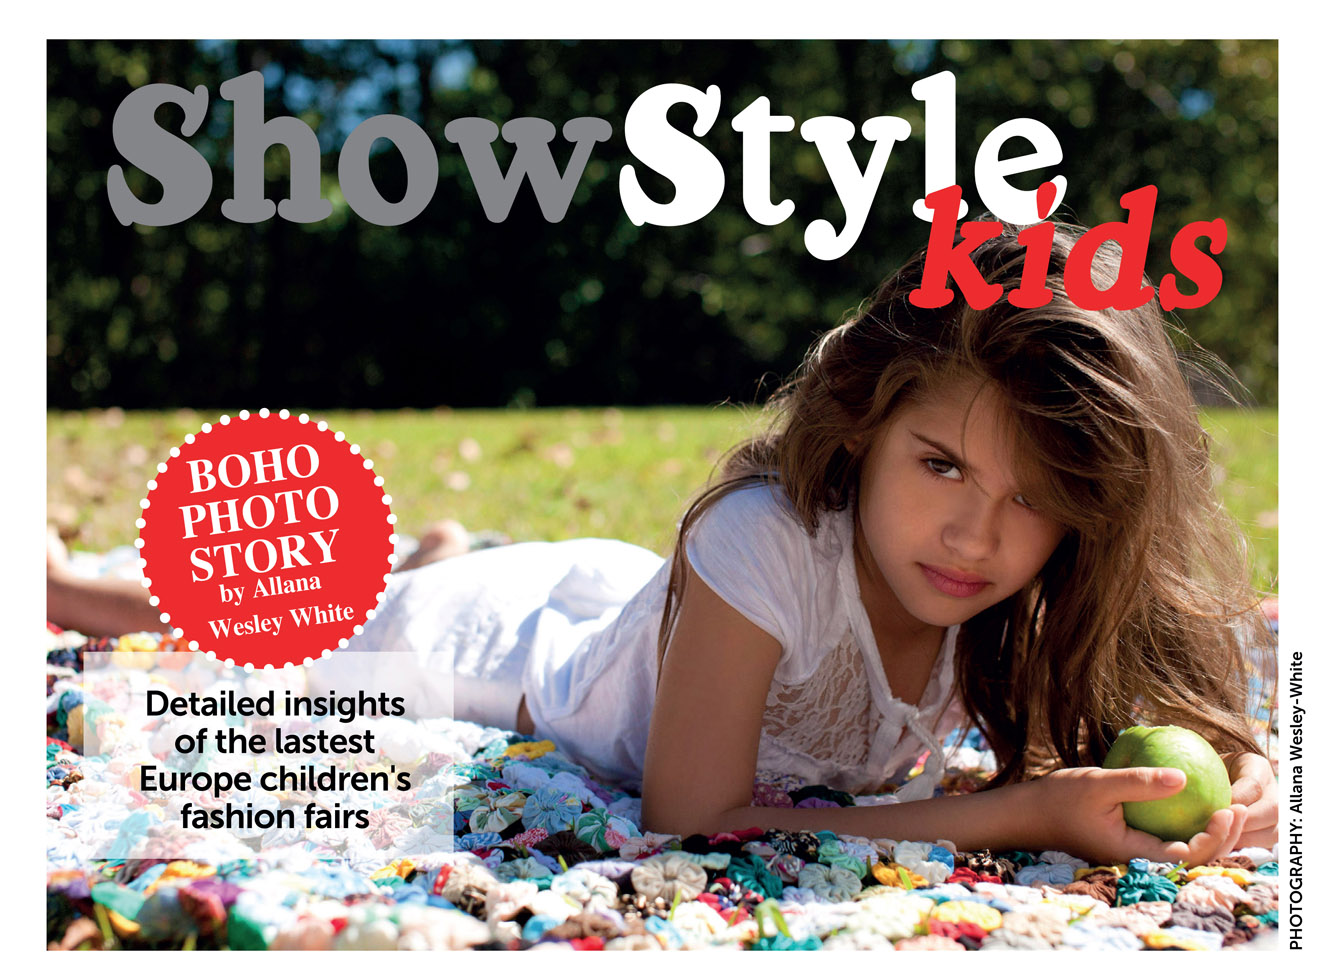 Kids magazine журнал: Наша маленькая модель. Или что ожидать от фотосессии для журнала Kids Magazine